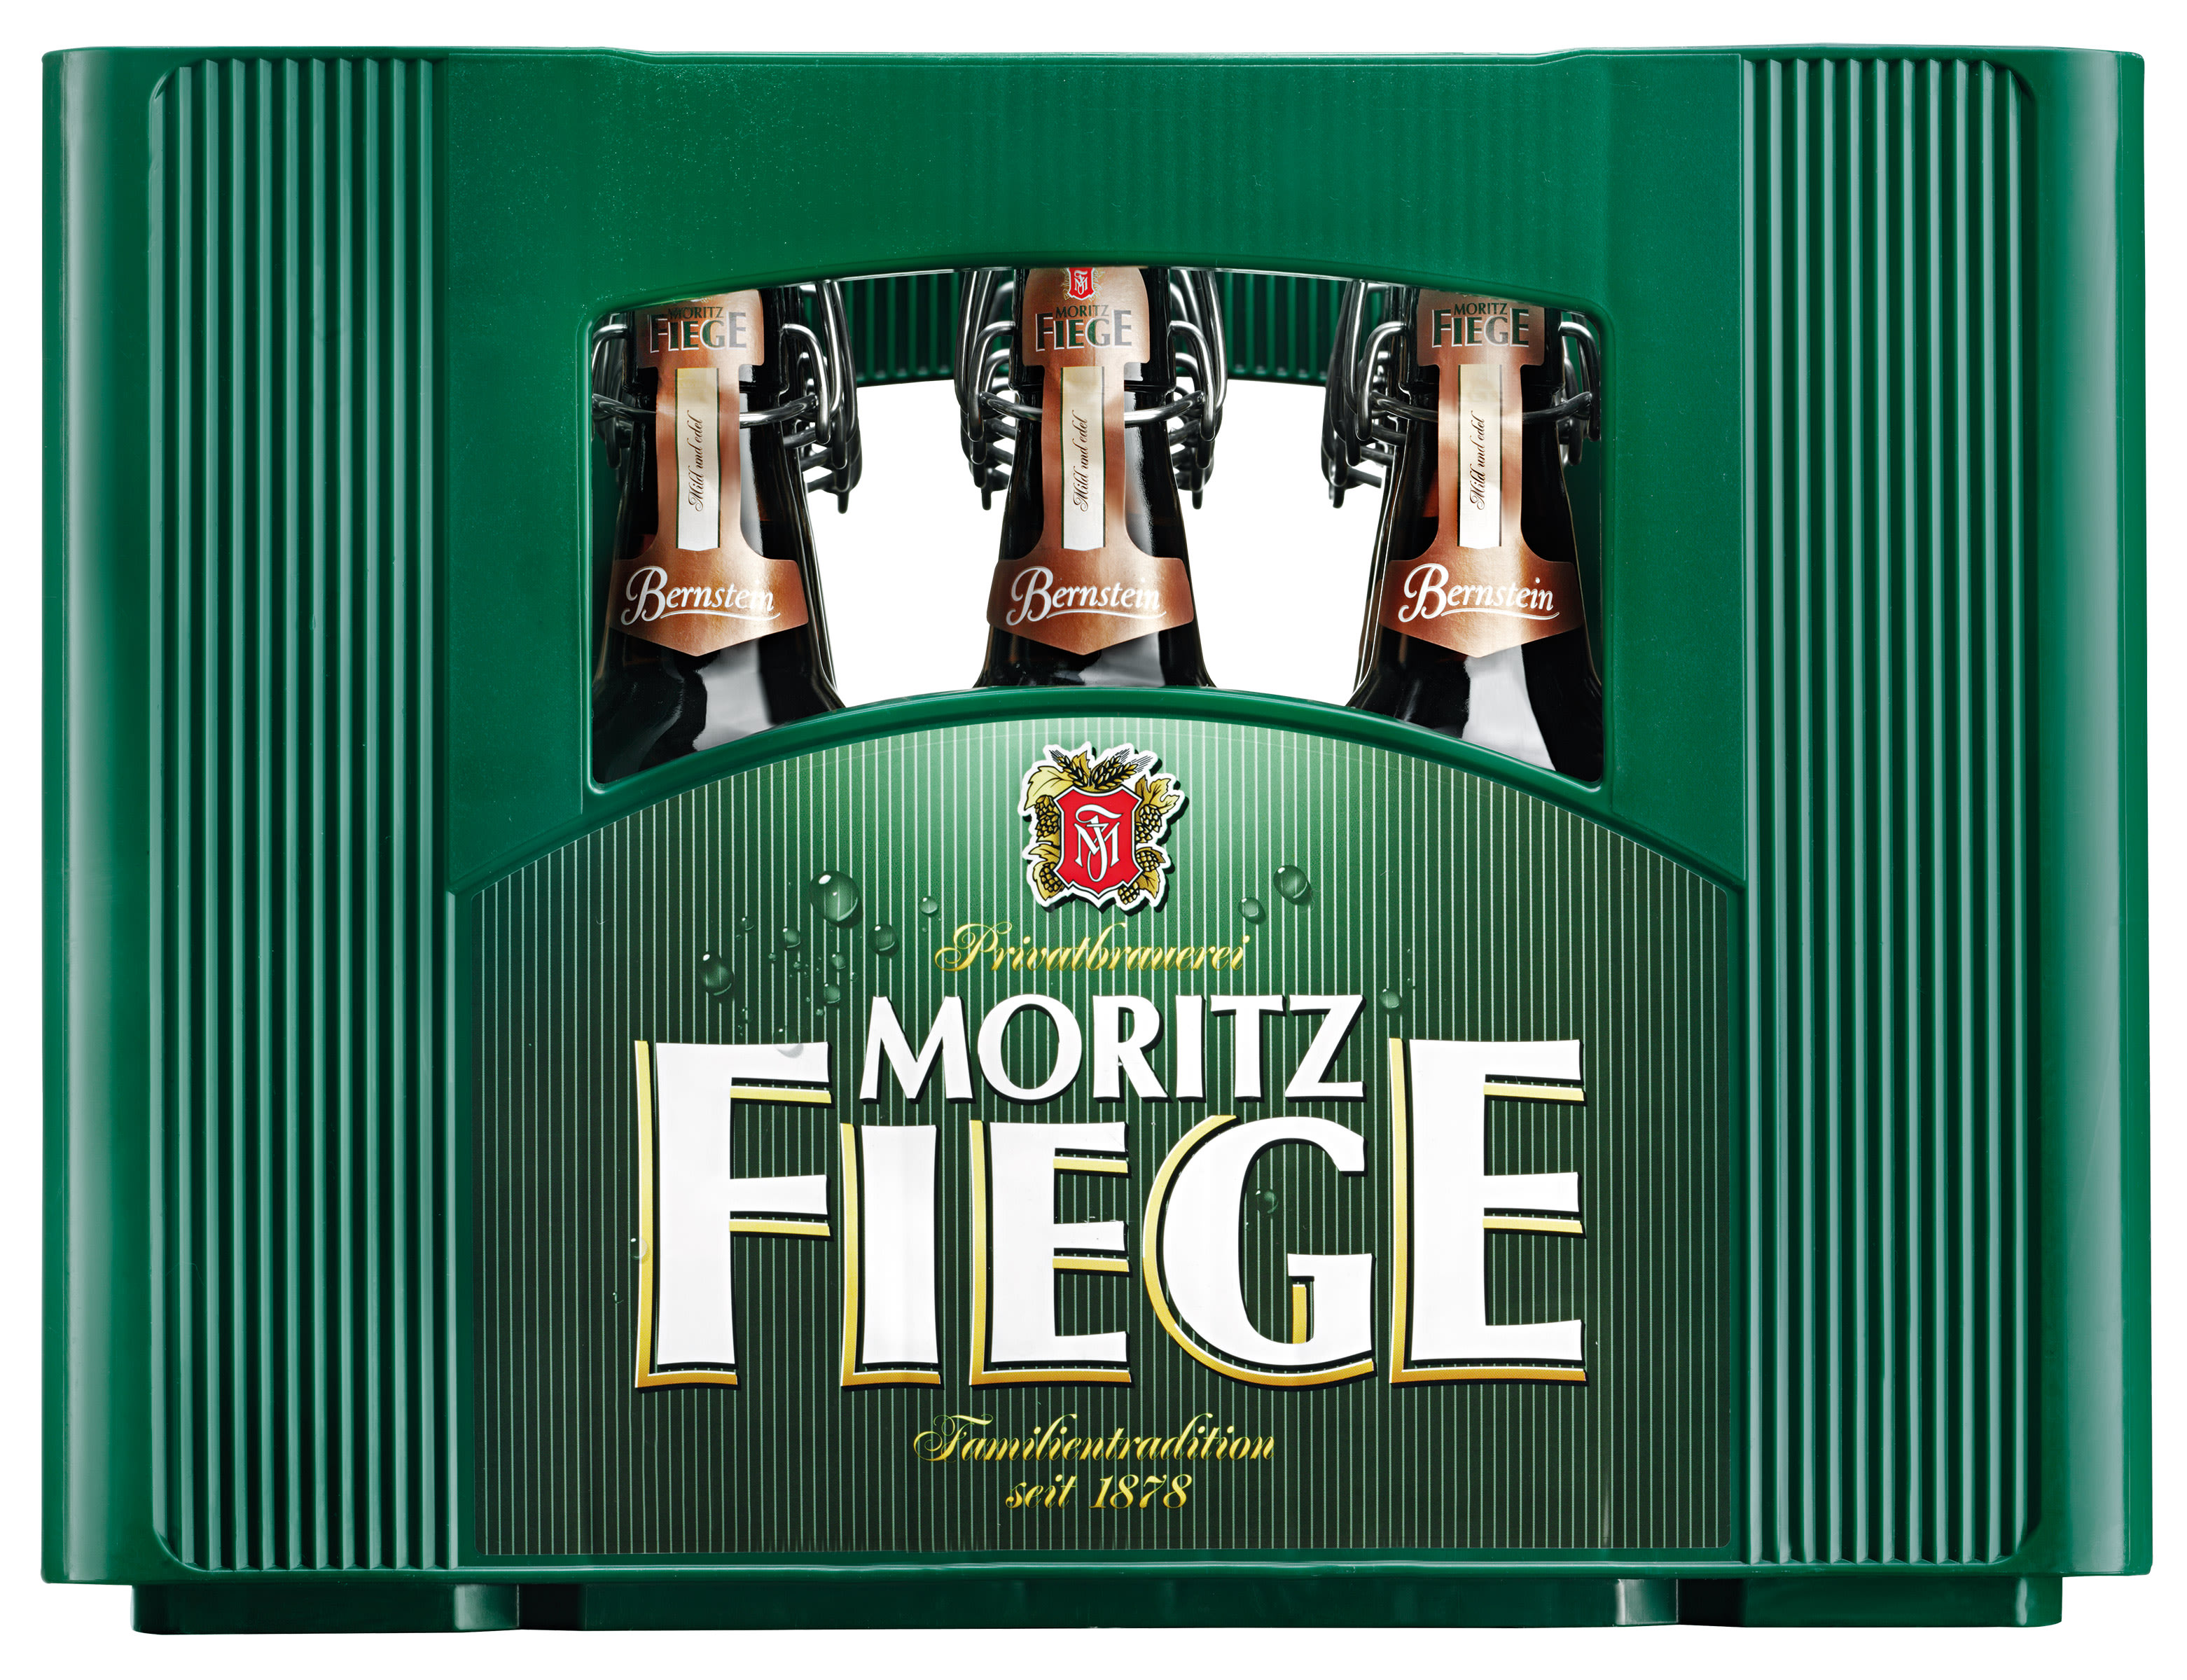 Moritz Fiege Bernstein Bügel Kasten 20 x 0,5 l Glas Mehrweg